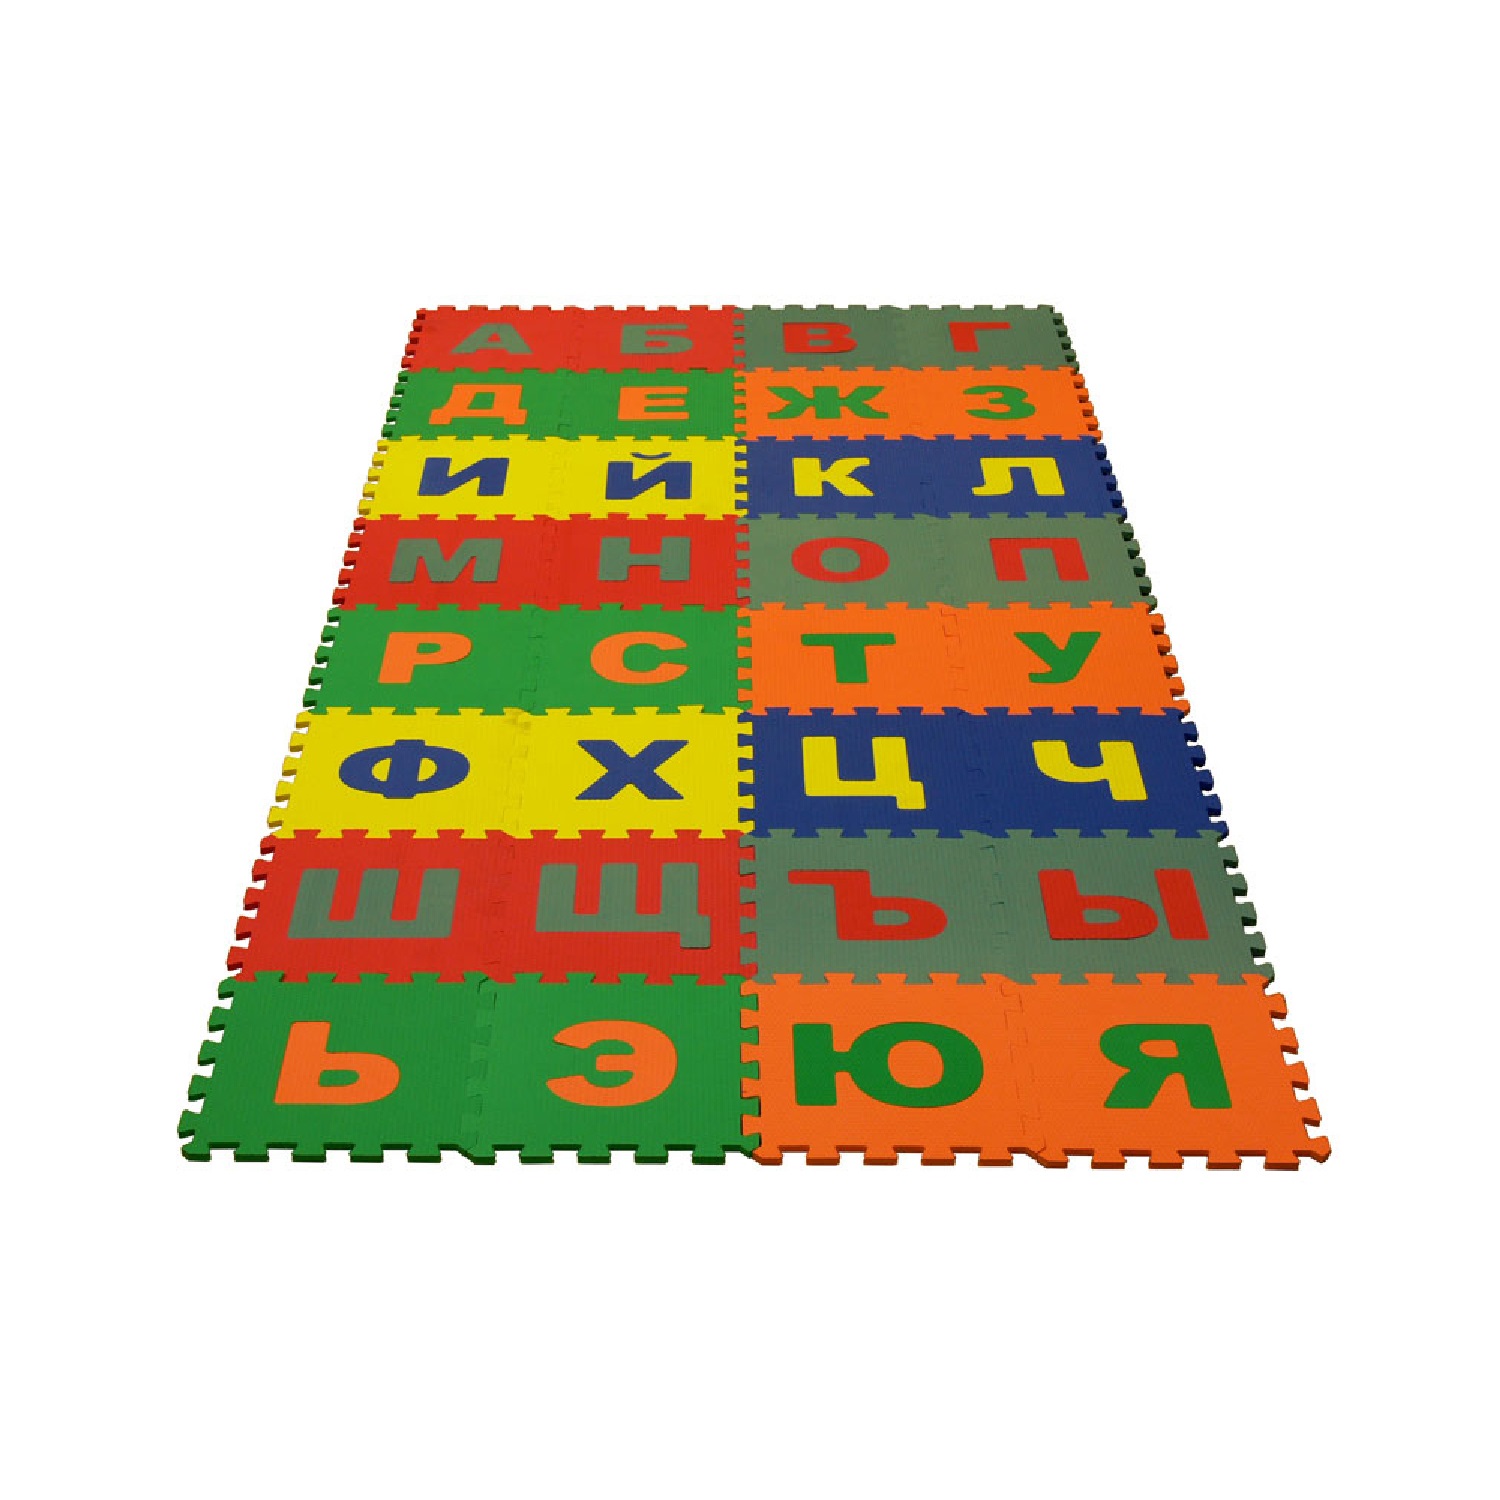 Развивающий детский коврик Eco cover игровой для ползания мягкий пол Русский Алфавит 25х25 - фото 1